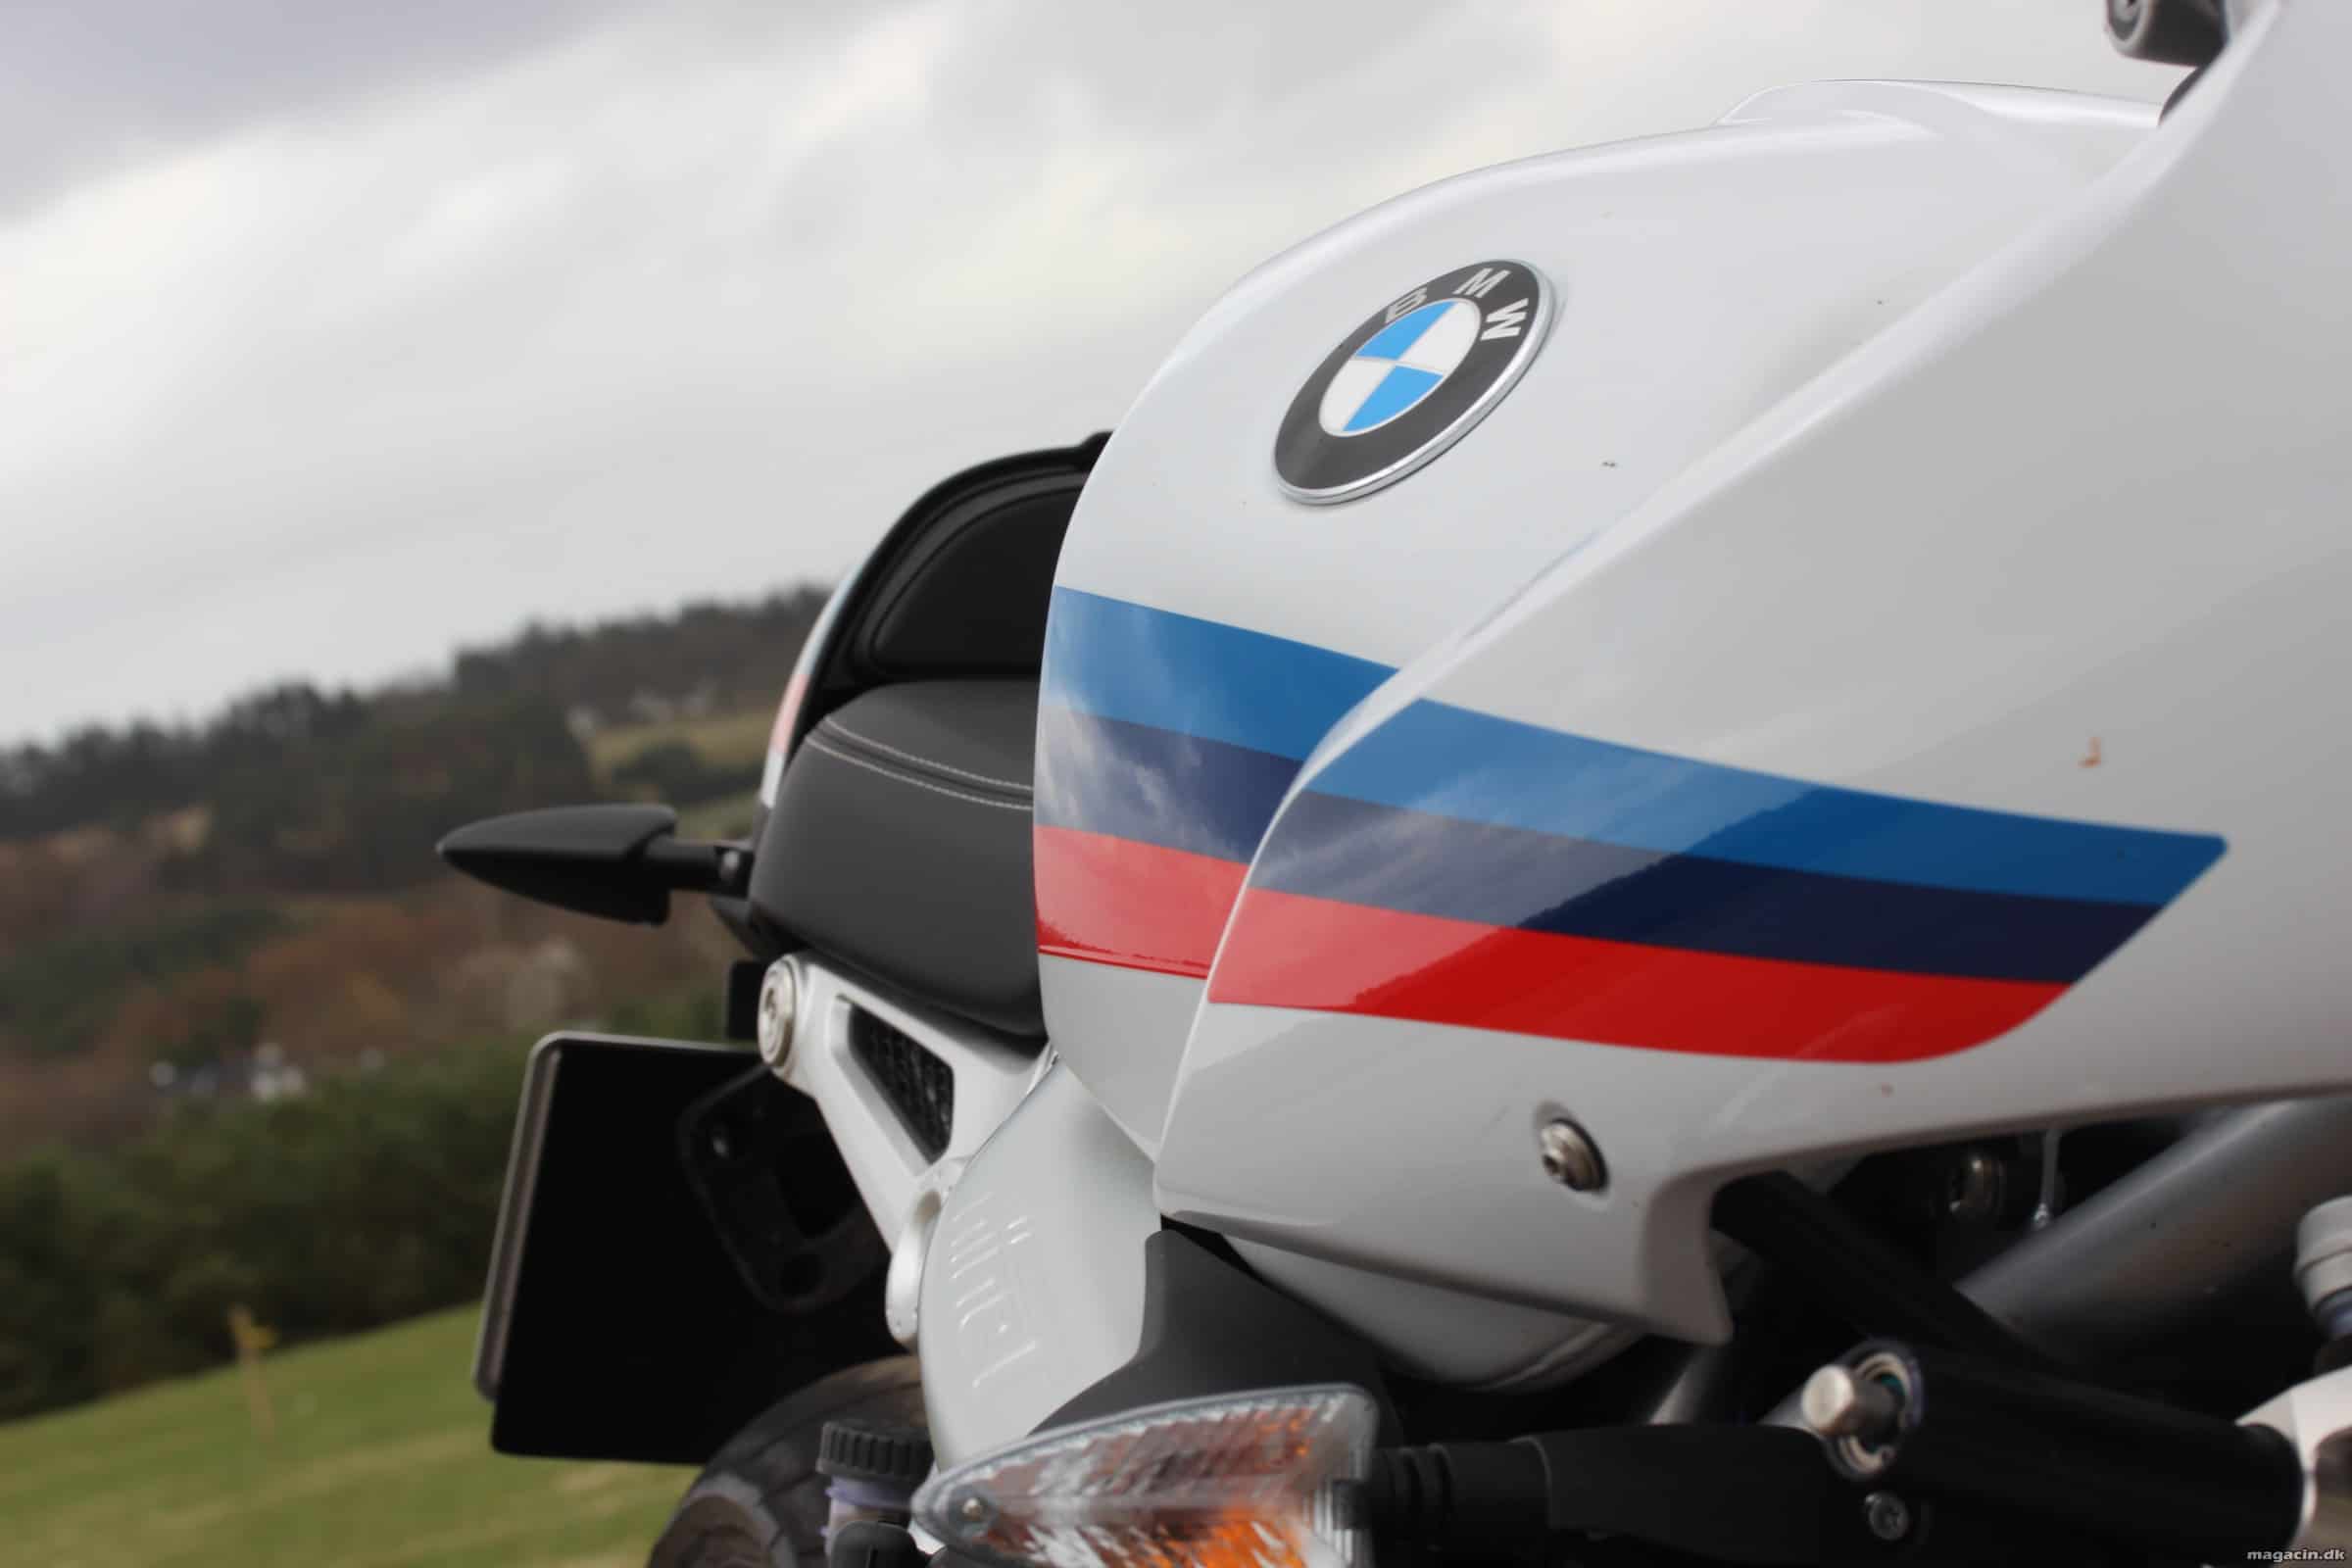 Prøvekørt: 2017 BMW R Nine-T Racer – Tidsportal til 70’erne